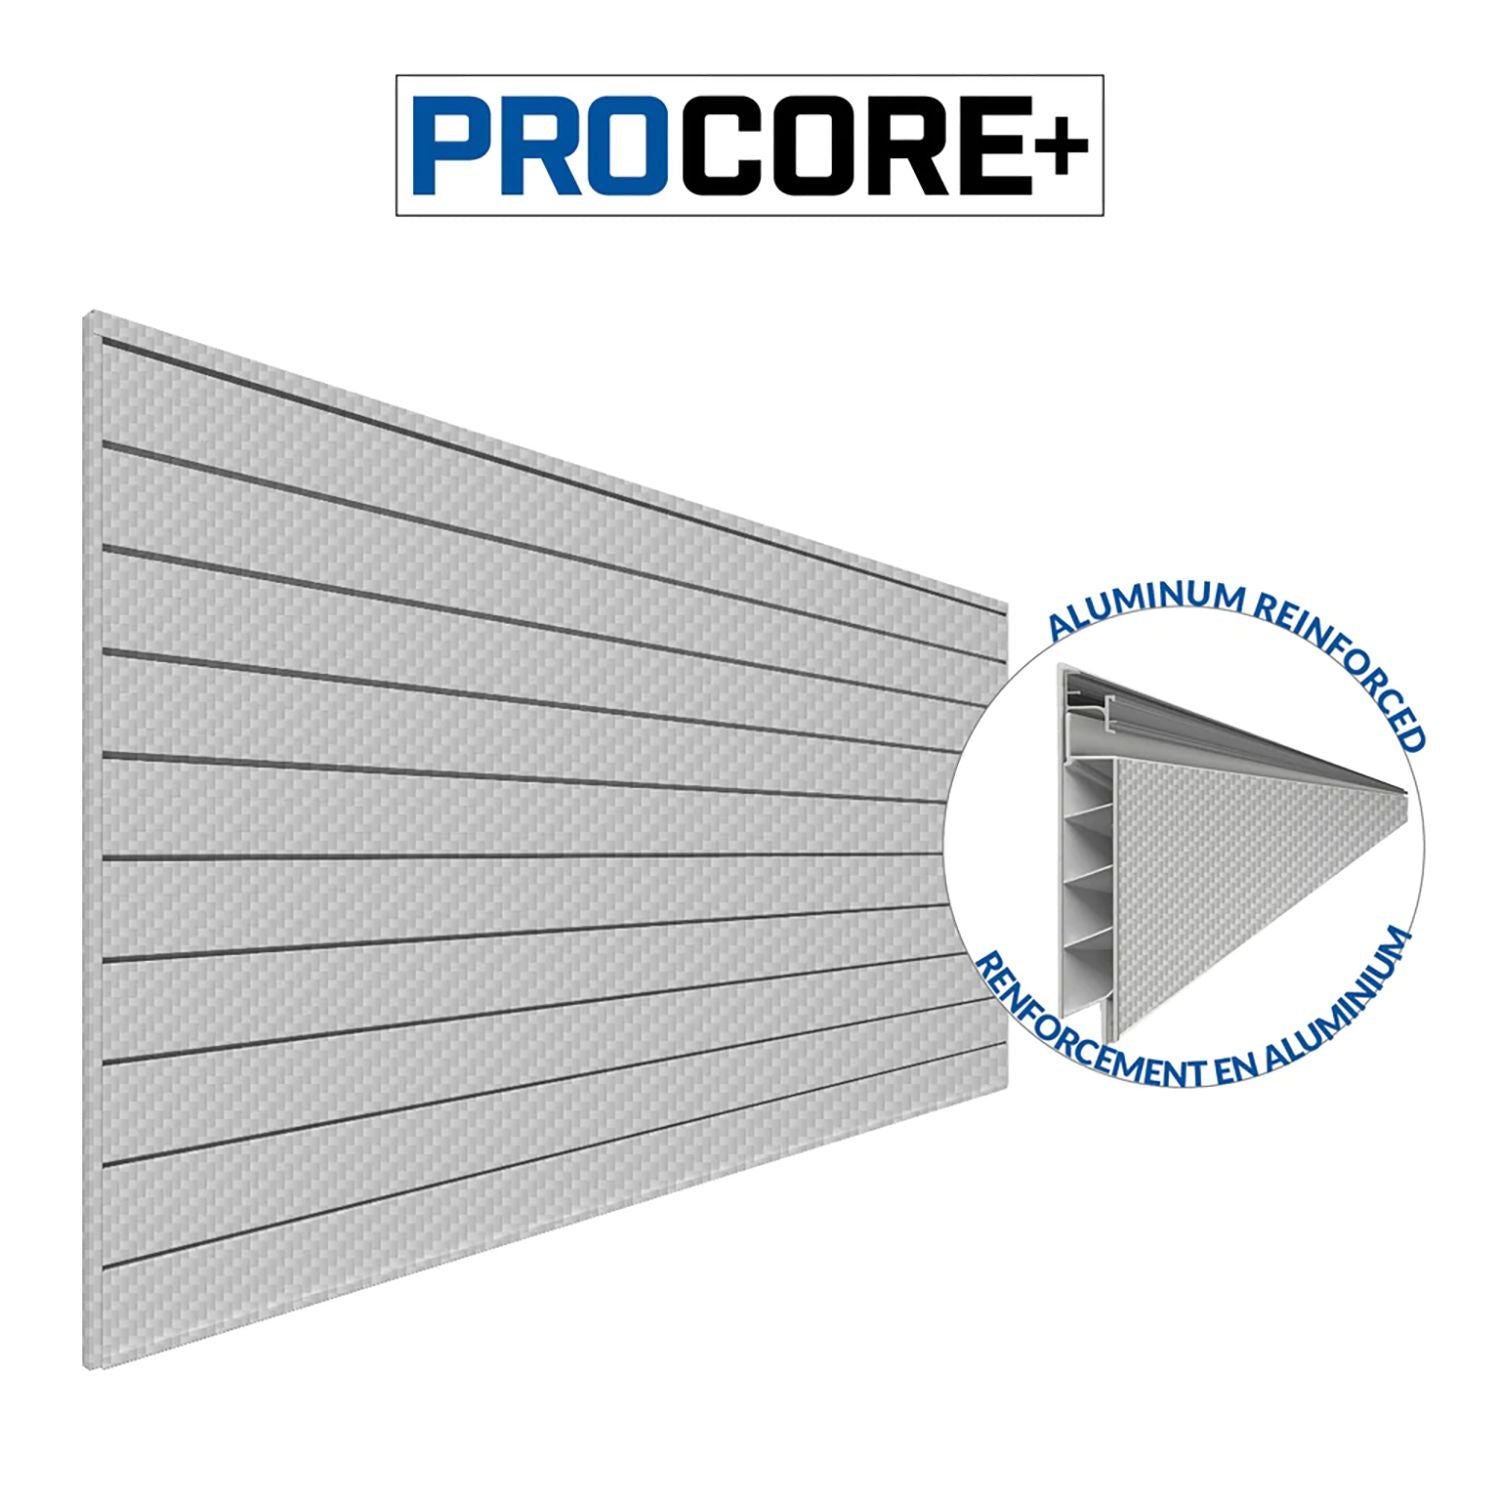 Proslat 87777 - PROCORE+ PVC Slatwall 4' x 8', Carbon Fiber Finish Silver